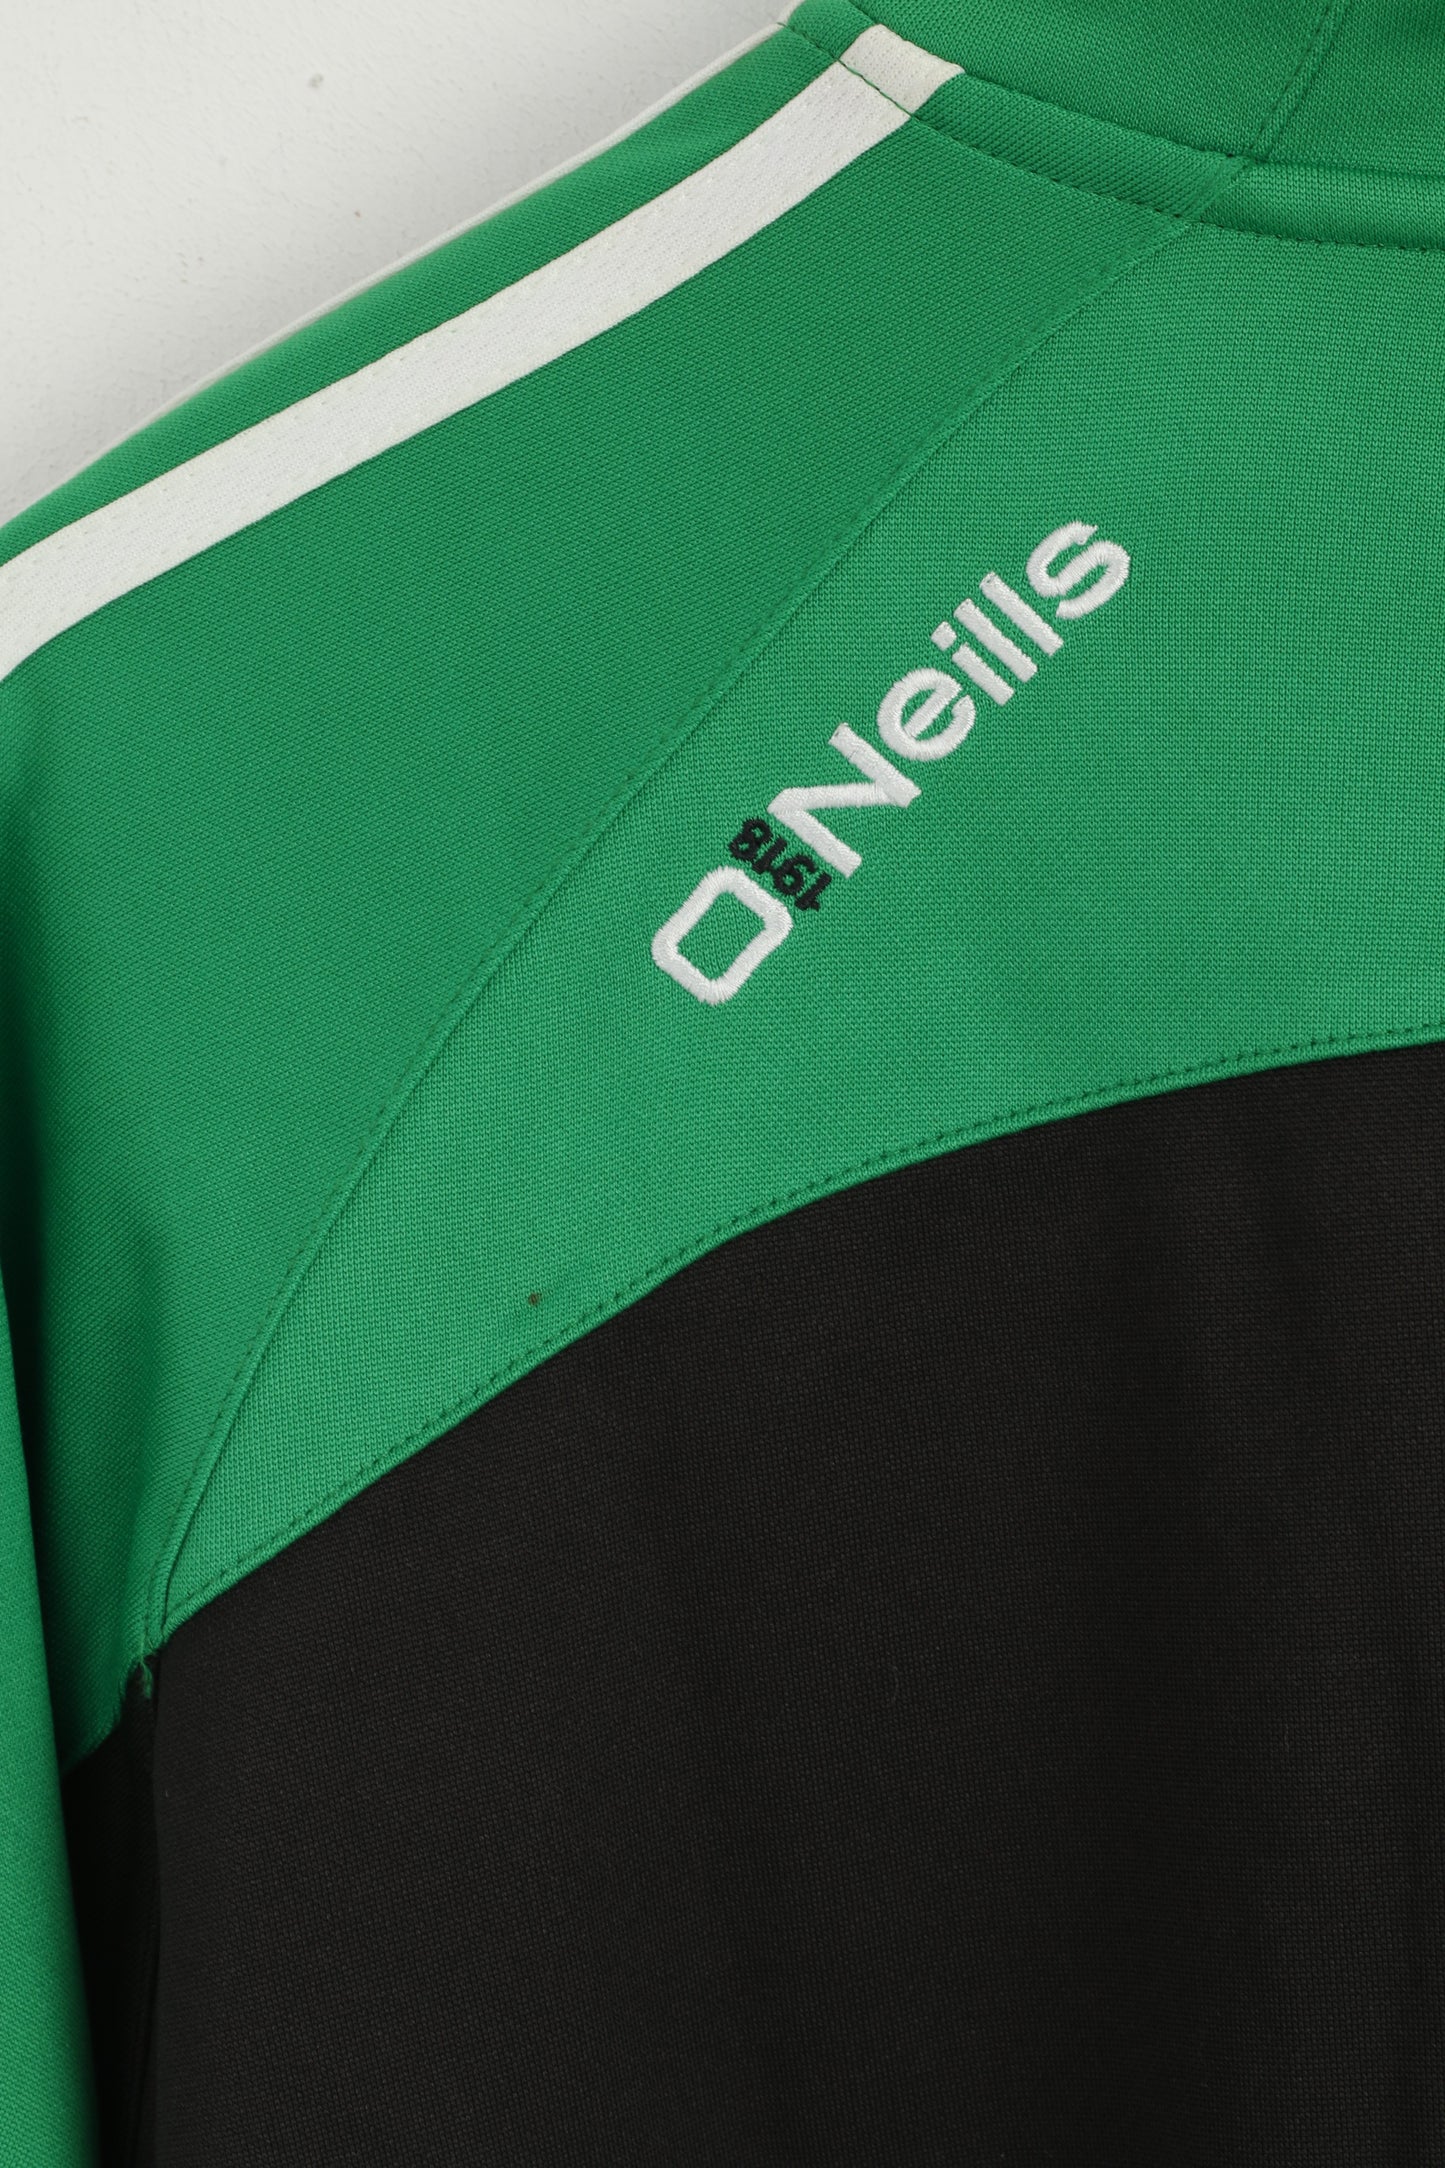 Felpa XL da uomo O' Neills verde Lourdes Celtic Football Club Top sportivo con zip e collo